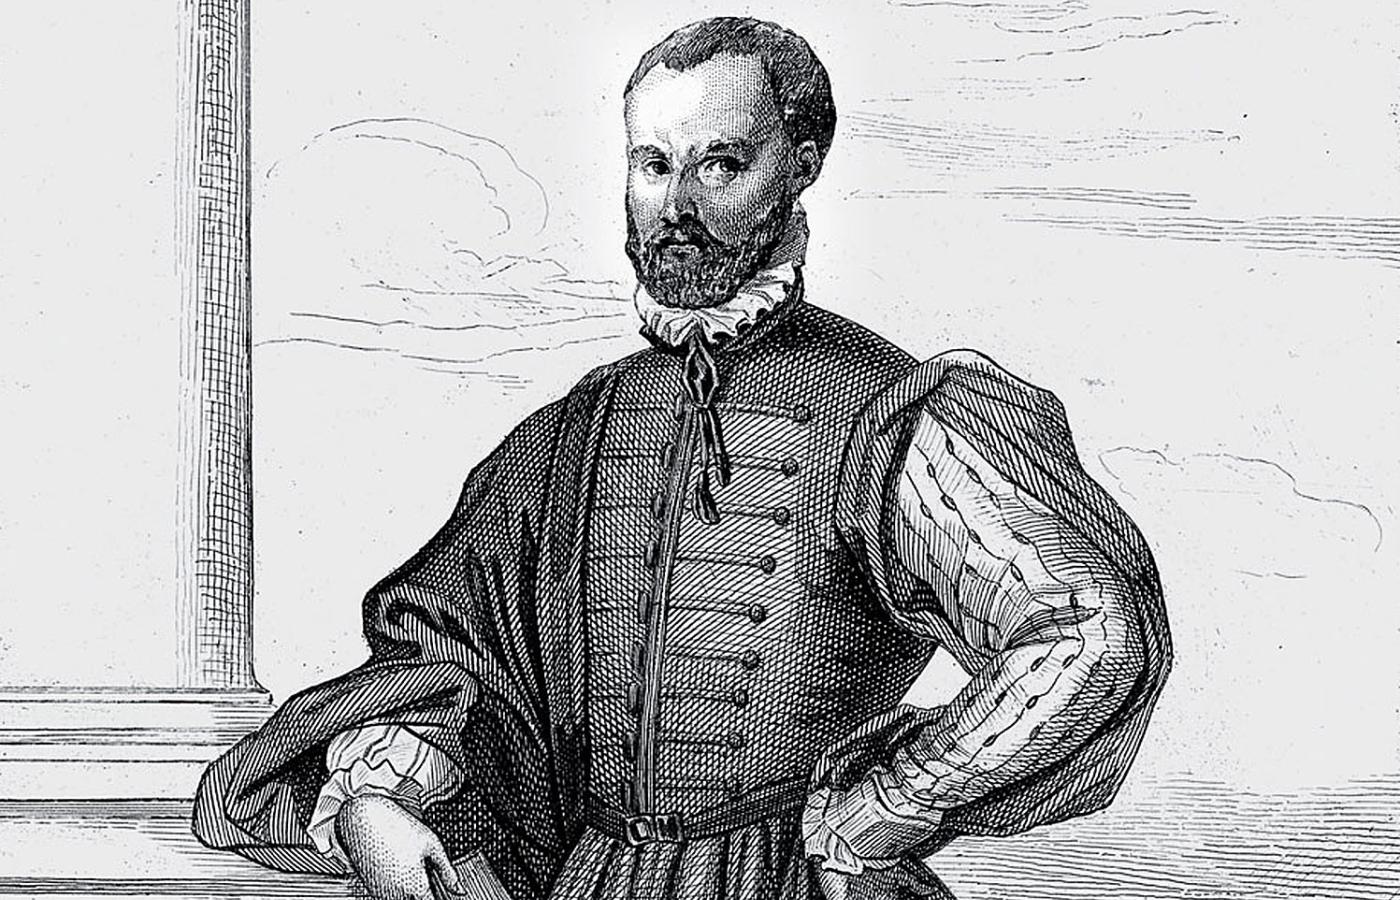 Niccolò Machiavelli (1469–1527) – florencki historyk, dyplomata, jeden z przedstawicieli renesansowej myśli politycznej